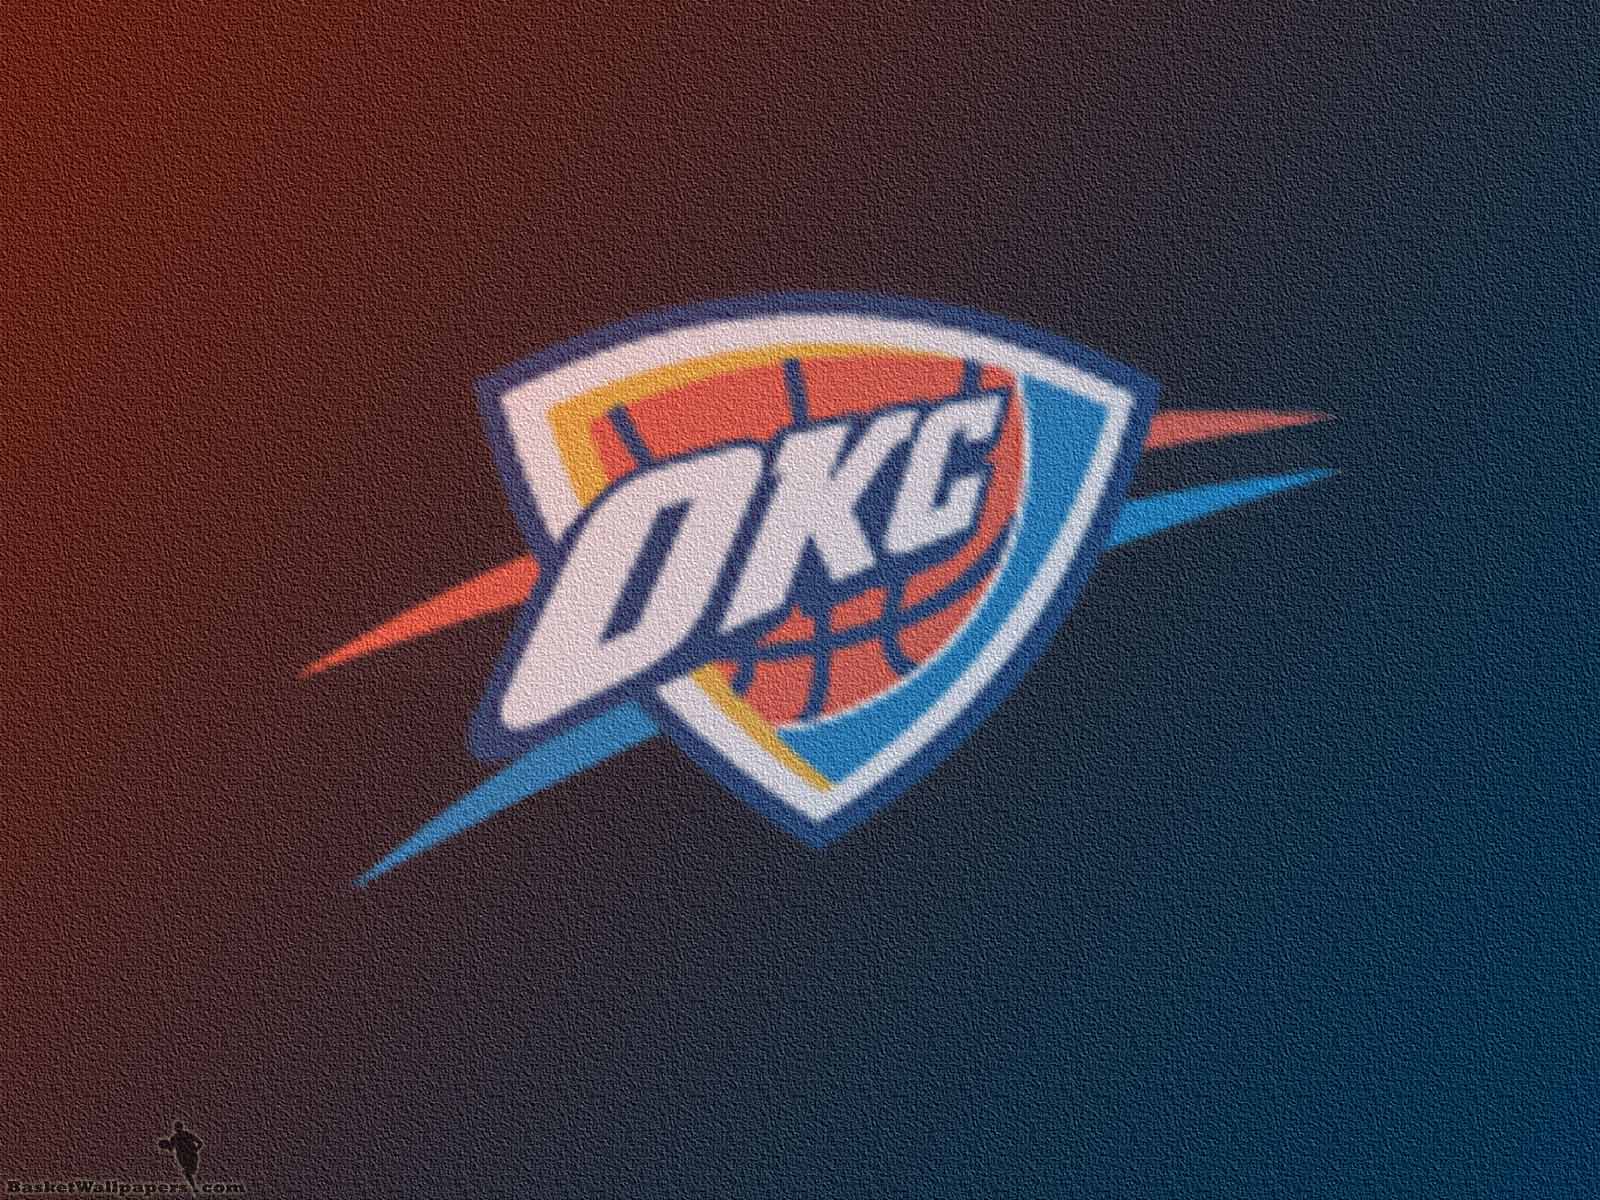 Oklahoma City Thunder Wallpaper | Basketball Wallpapers at ...